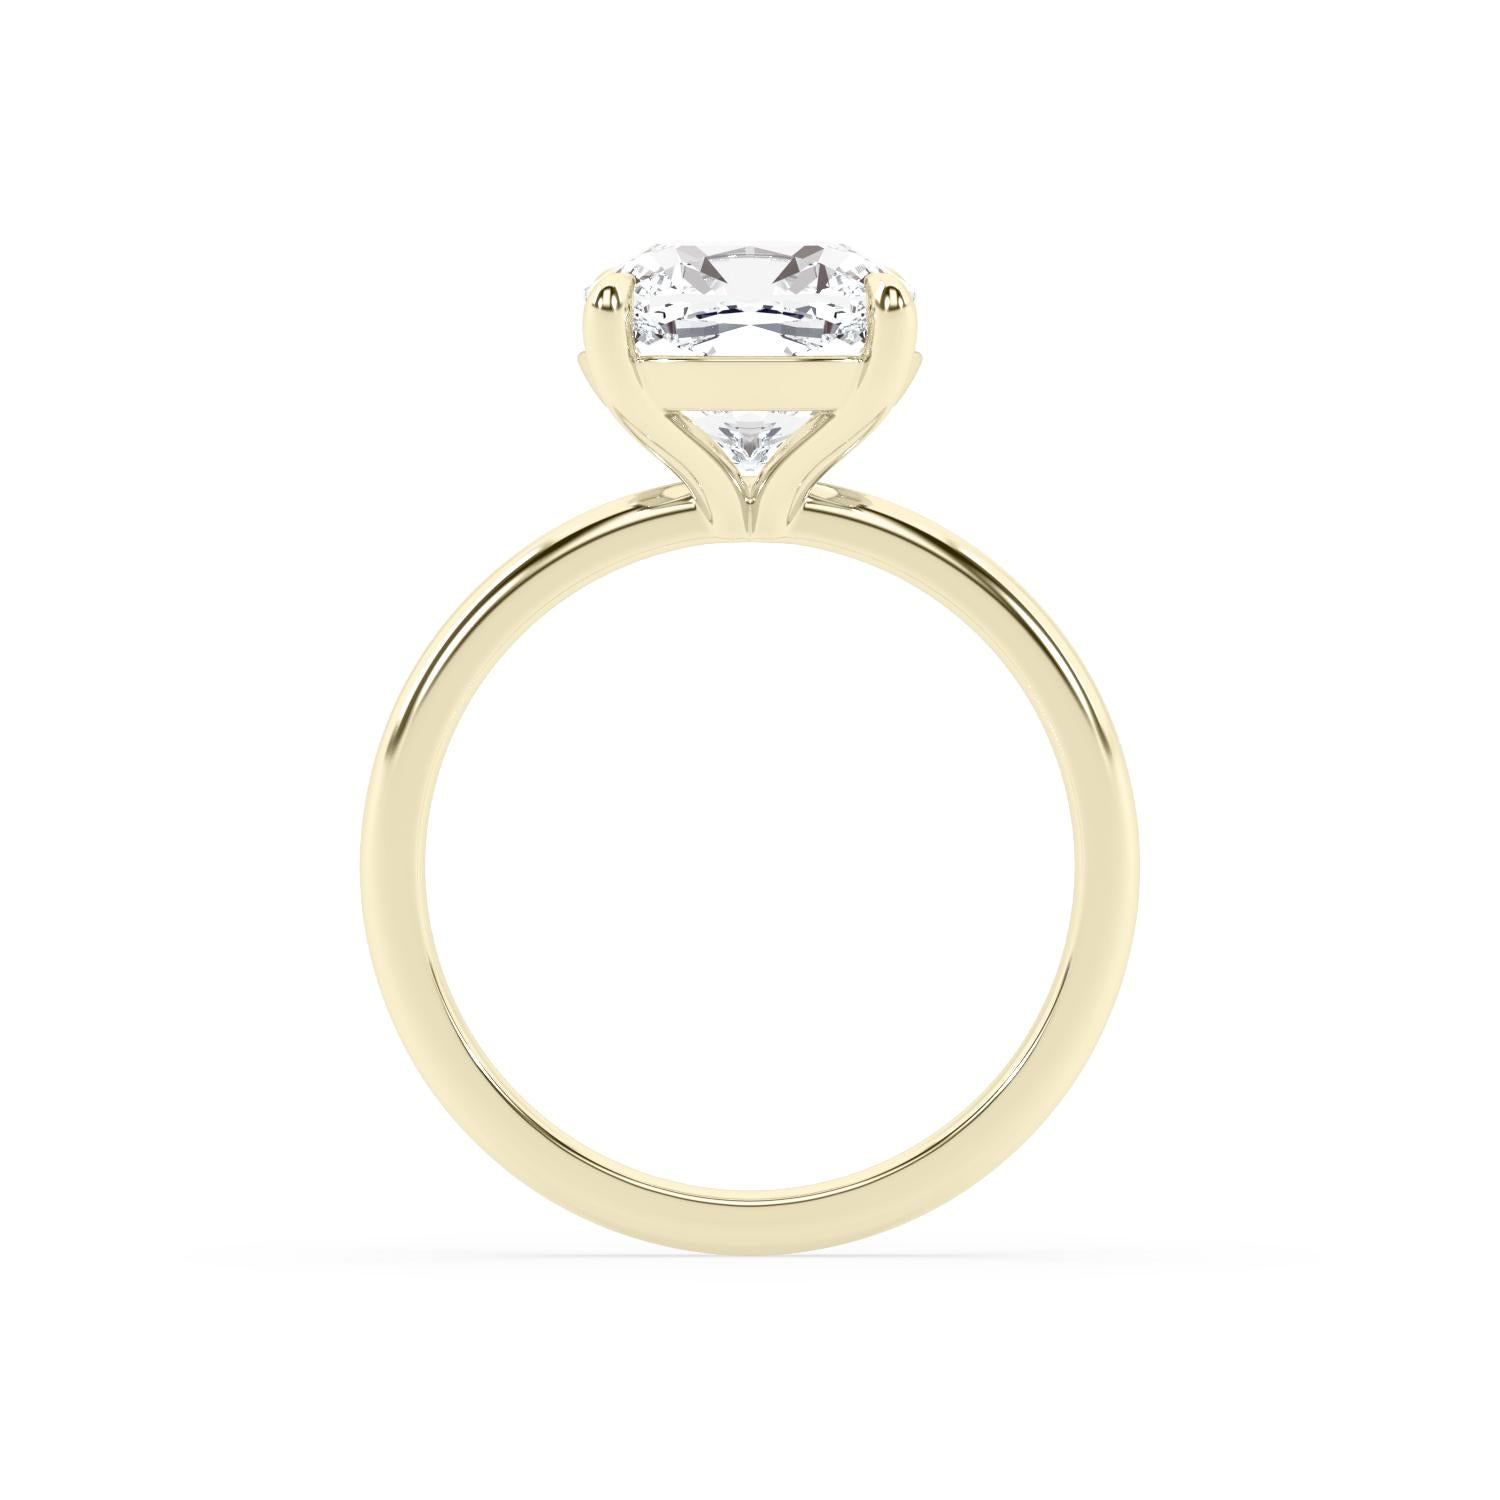 2 Karat GIA-zertifiziert quadratischen Brillant Kissen Diamant Verlobungsring mit G Farbe und VS2 Klarheit (**dieser Ring kann mit einem anderen Diamanten gemacht werden, um Ihr Budget und Geschmack unterzubringen, kontaktieren Sie bitte für weitere